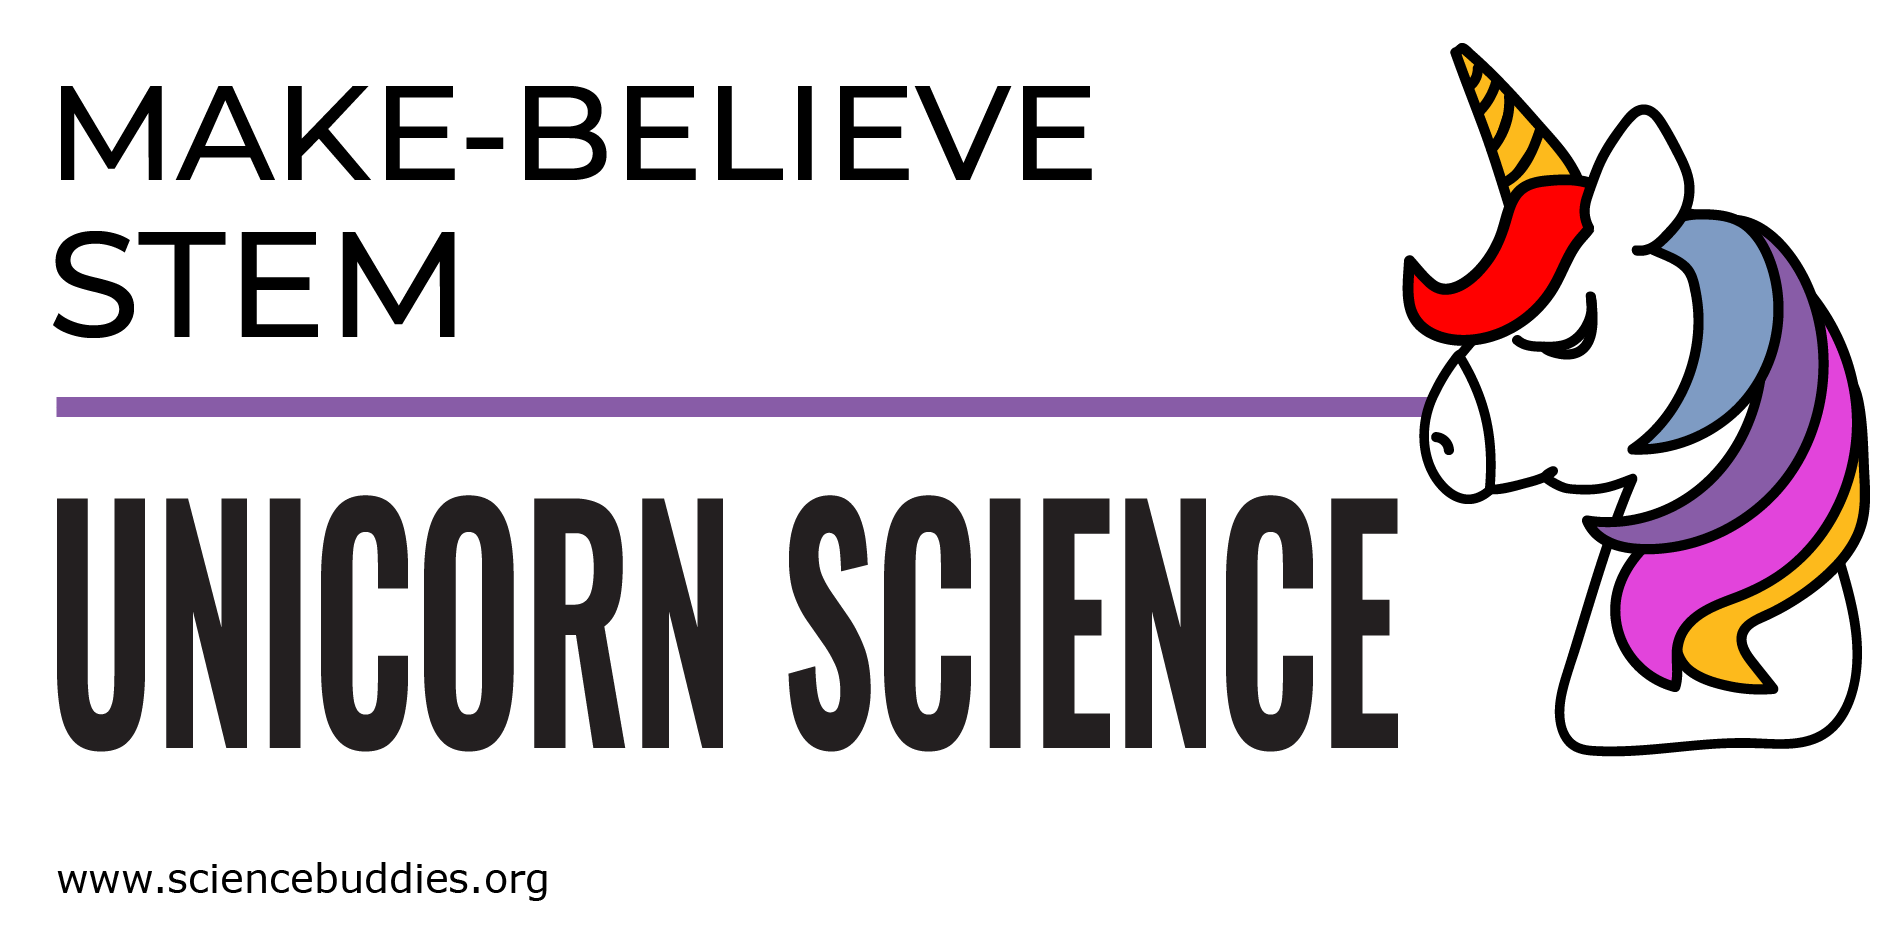 Unicorn Science & Make-Believe STEM